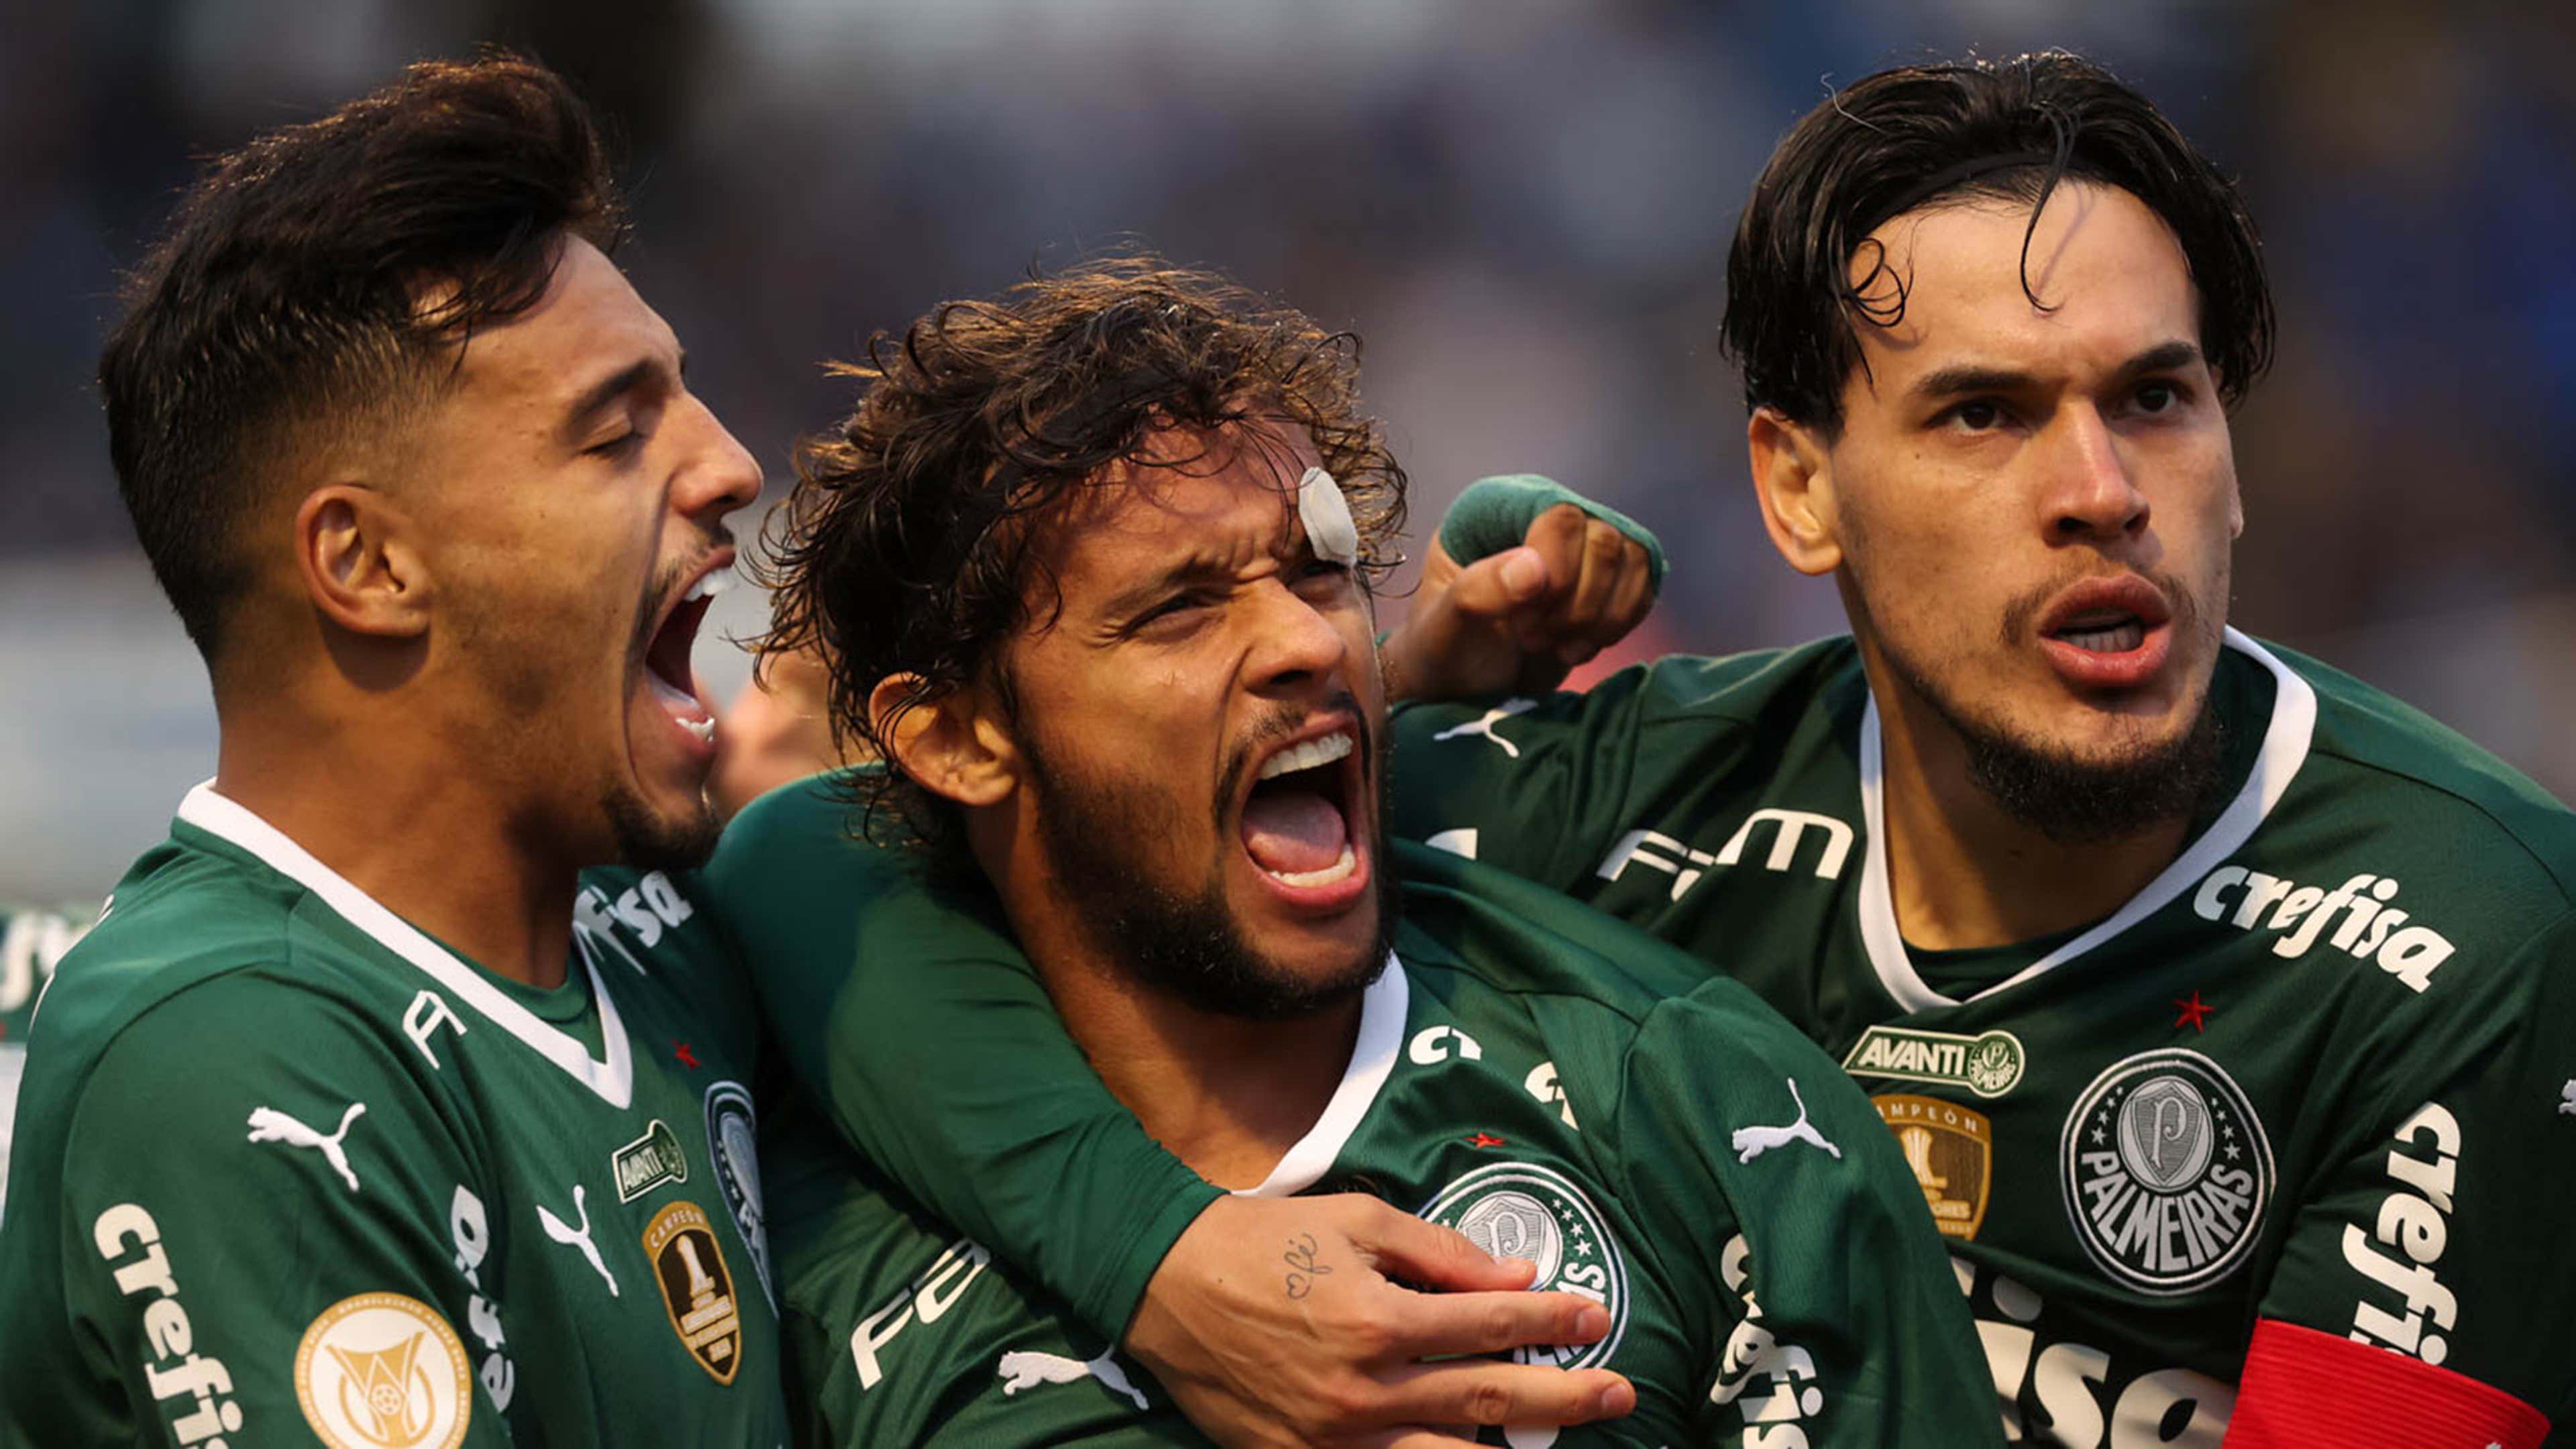 Cerro Porteño x Palmeiras: onde assistir ao vivo, horário e